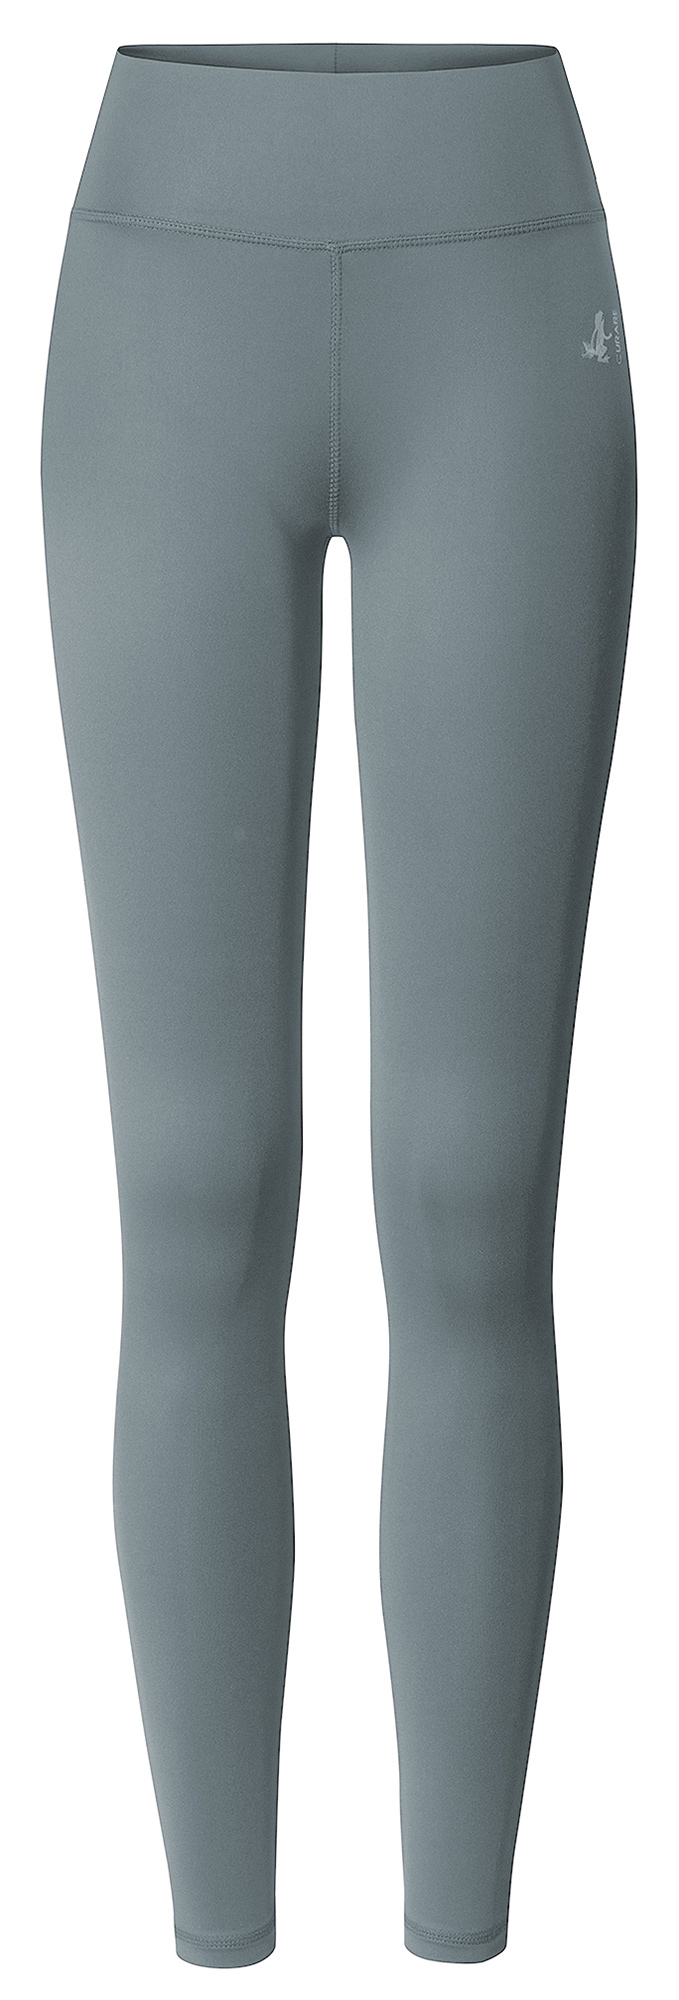 YOGISHOP, Yoga leggings high waist - french grey